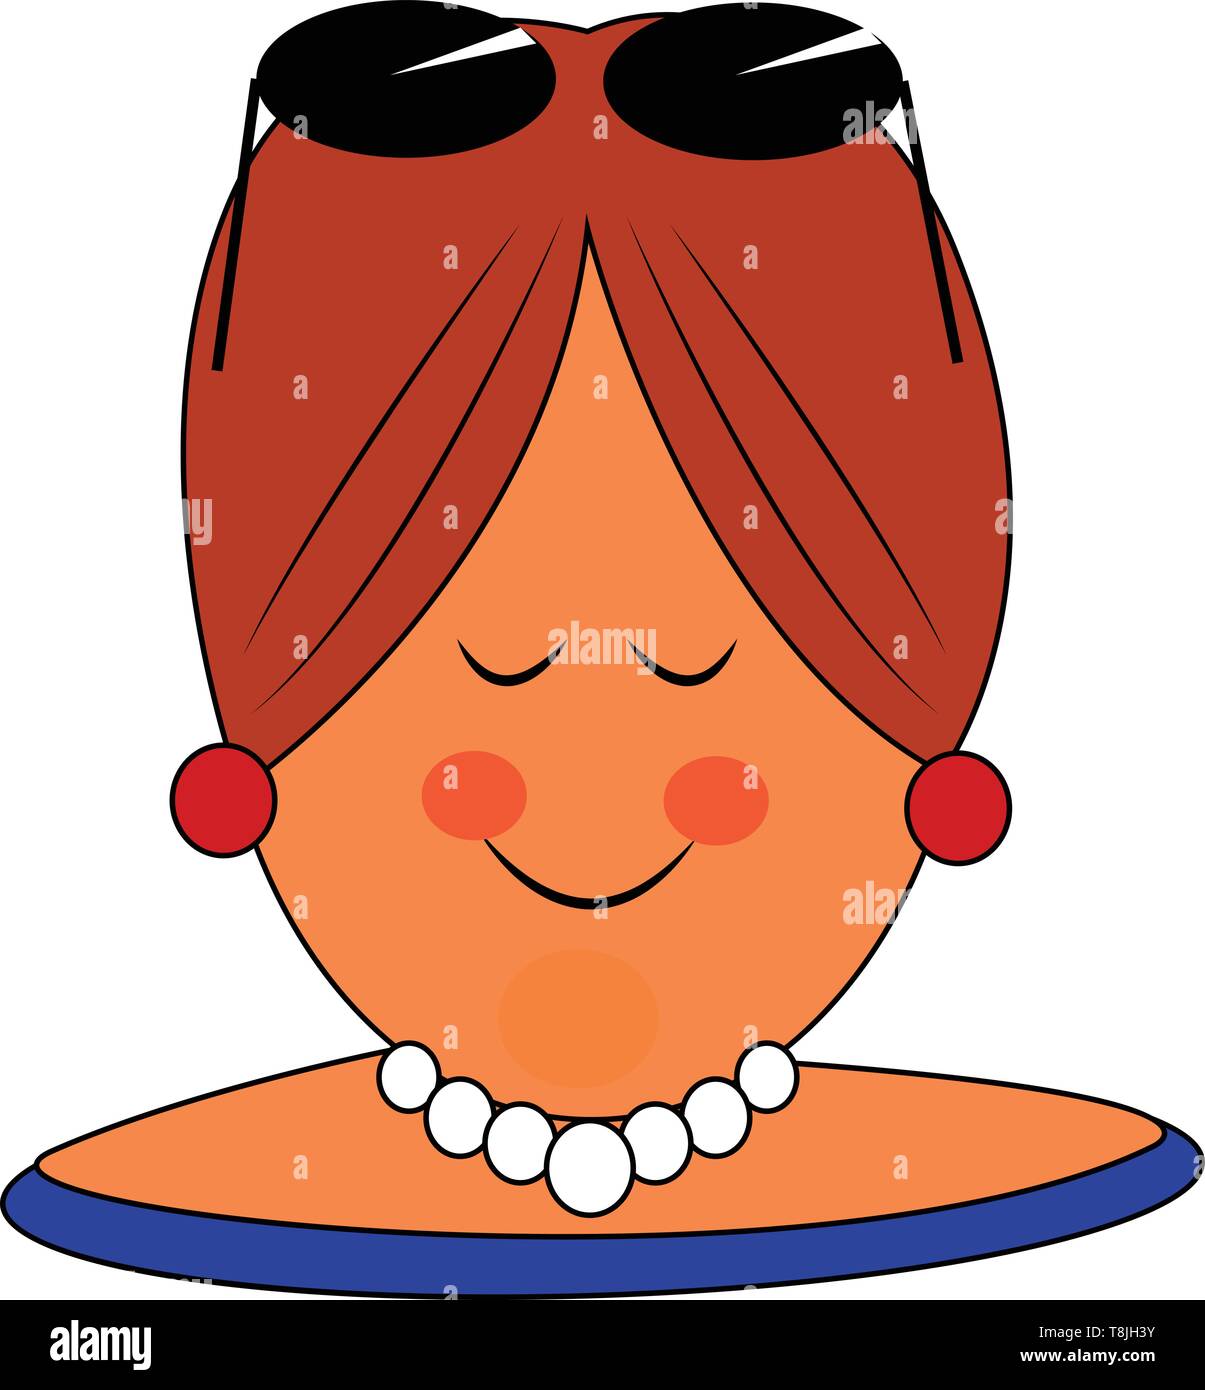 Une grande femme avec collier blanc, avec des lunettes sur la tête, avec des boucles d'oreilles, portant un turban rouge, les yeux fermés, souriant, Scénario, dessin en couleur ou illust Illustration de Vecteur